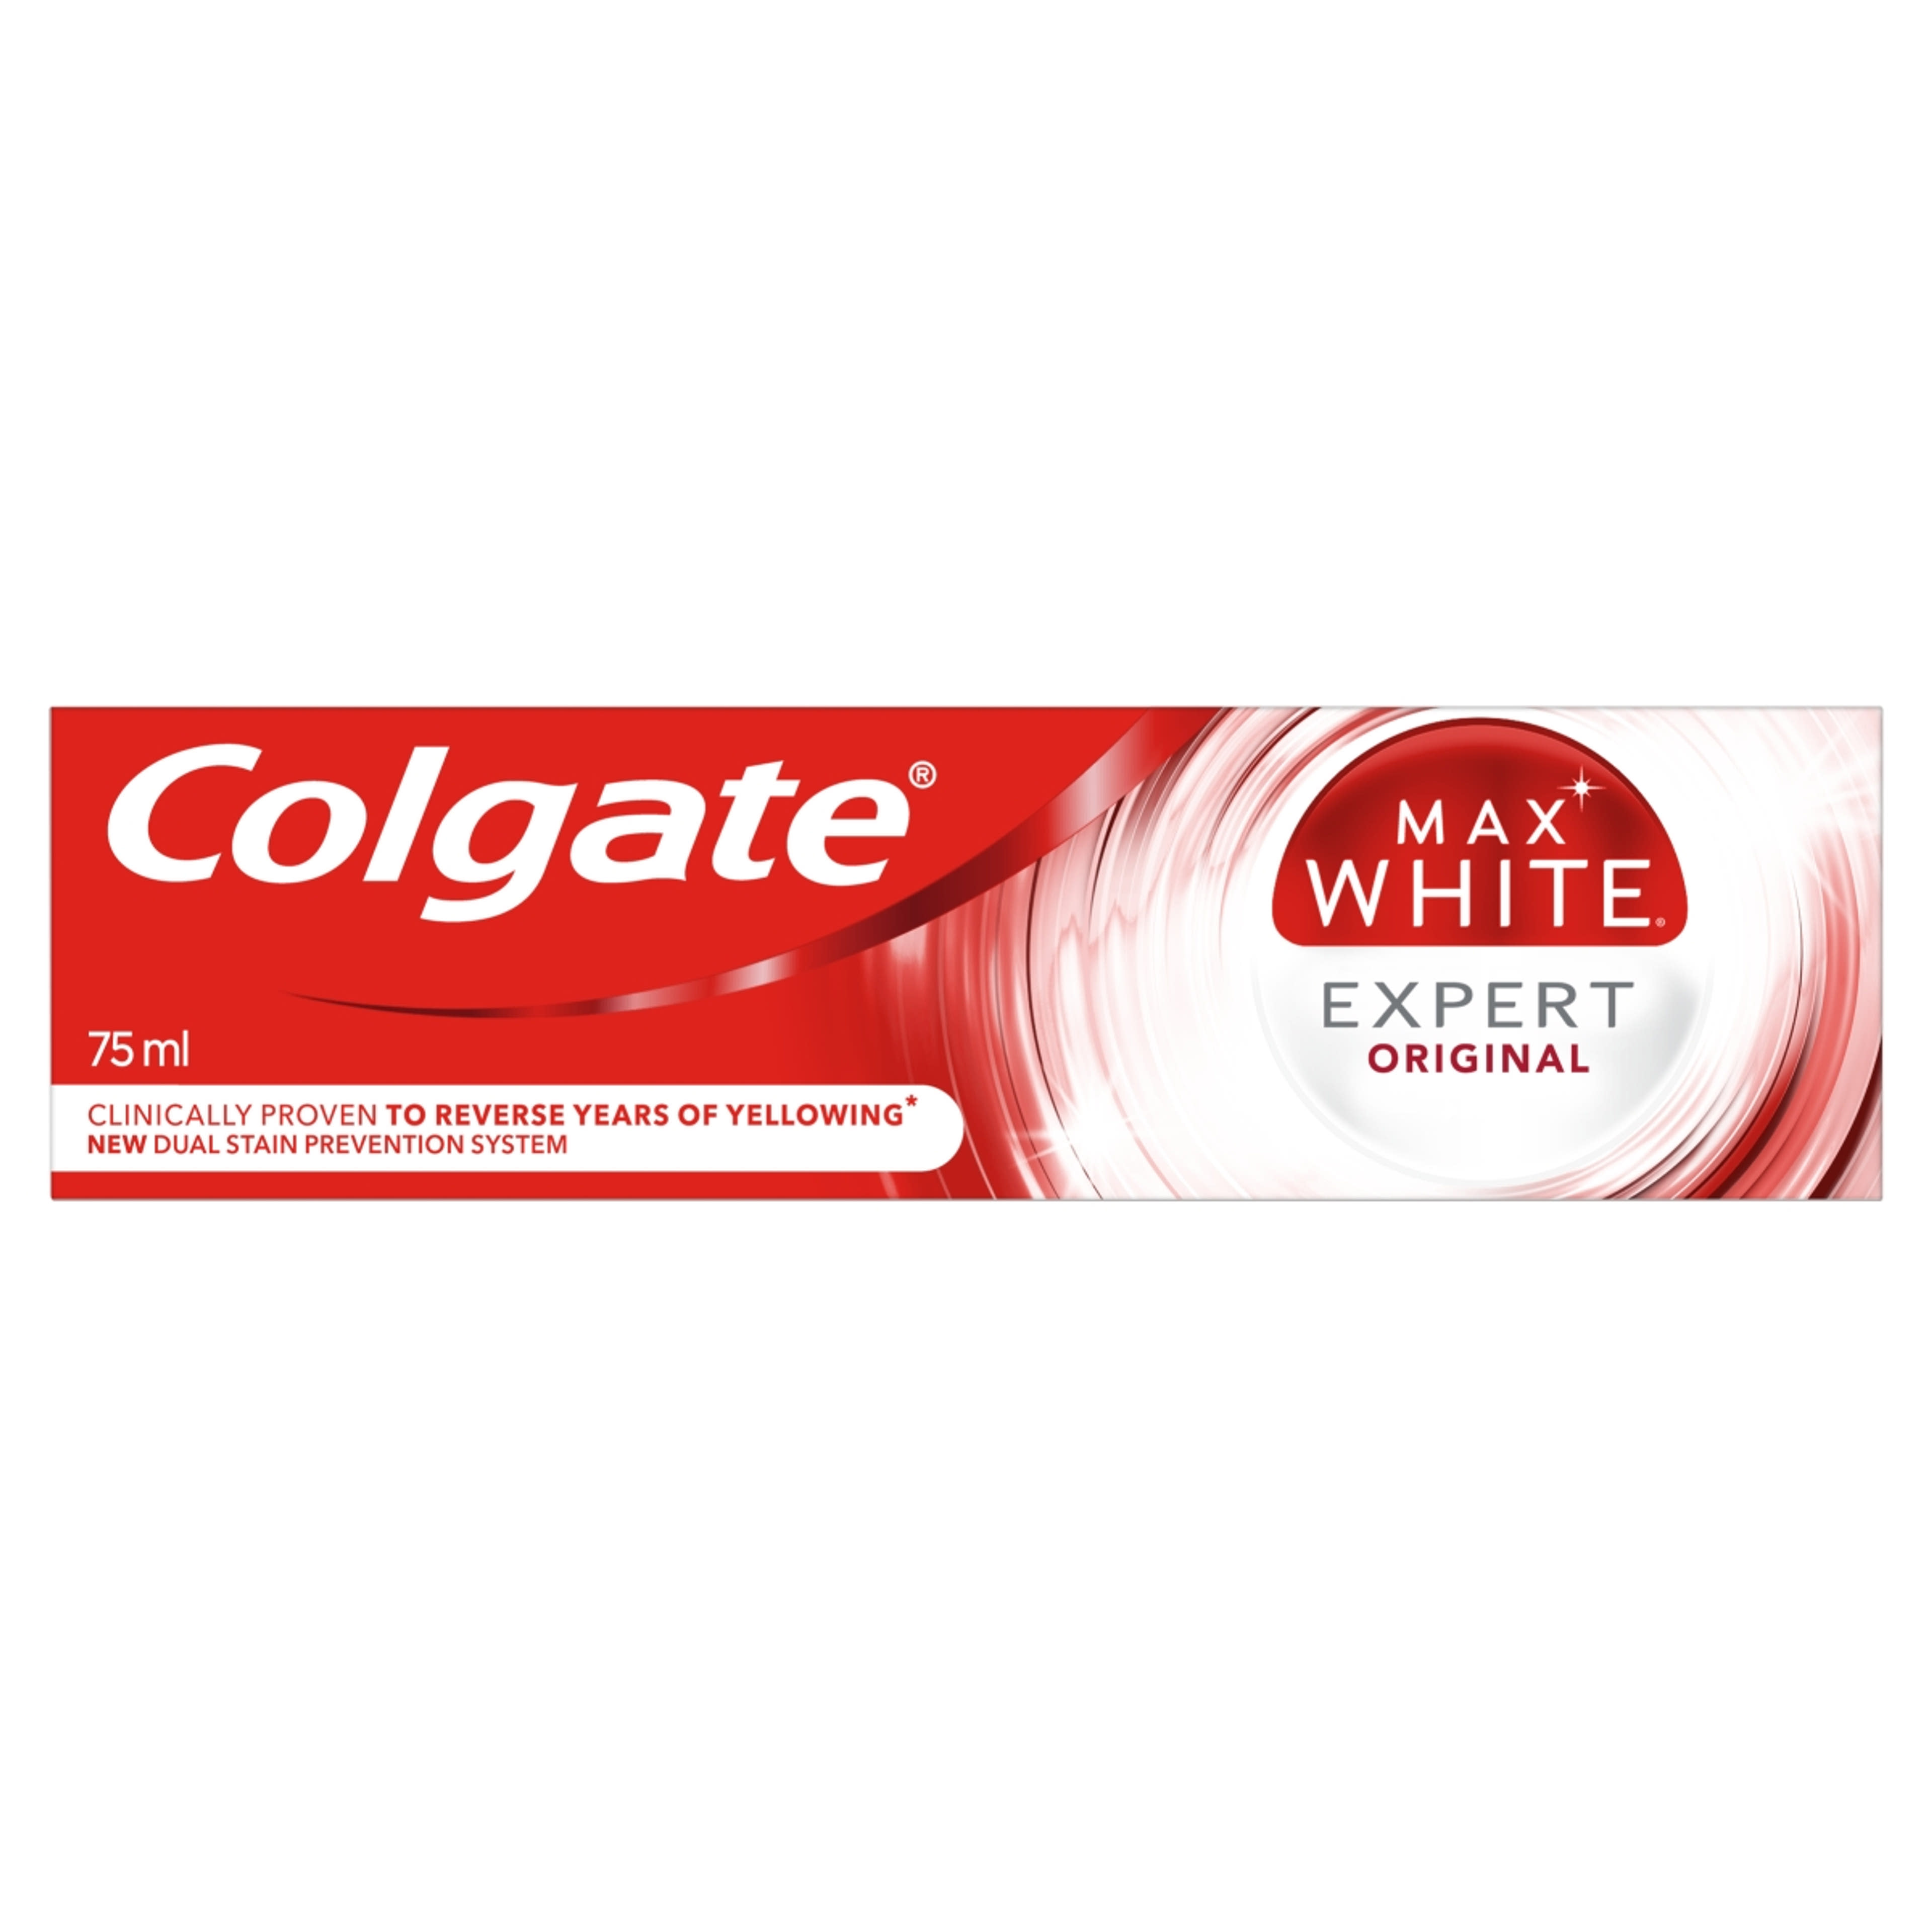 Colgate Max White Expert Original fogkrém - 75 ml-9